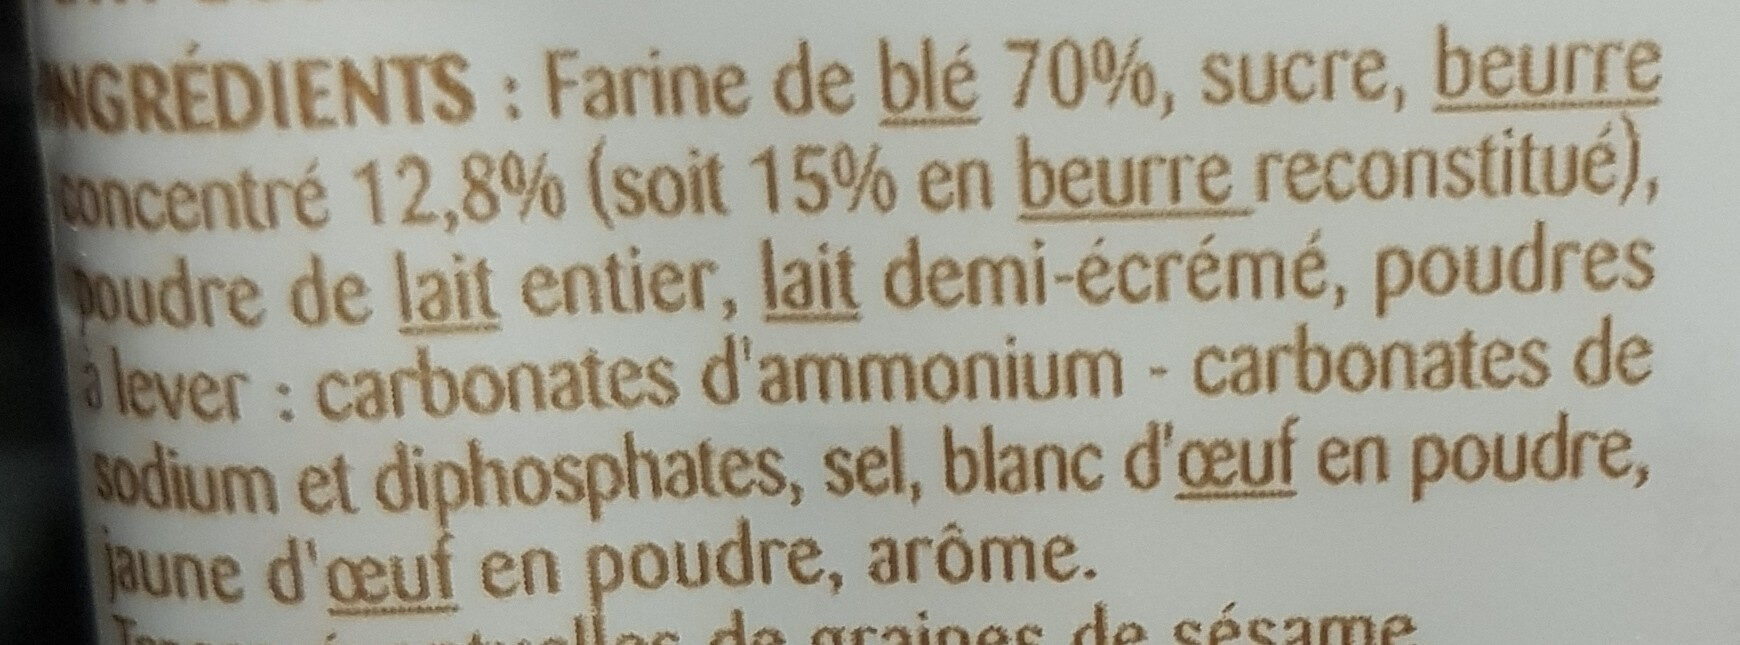 Petit beurre - Ingredienser - fr